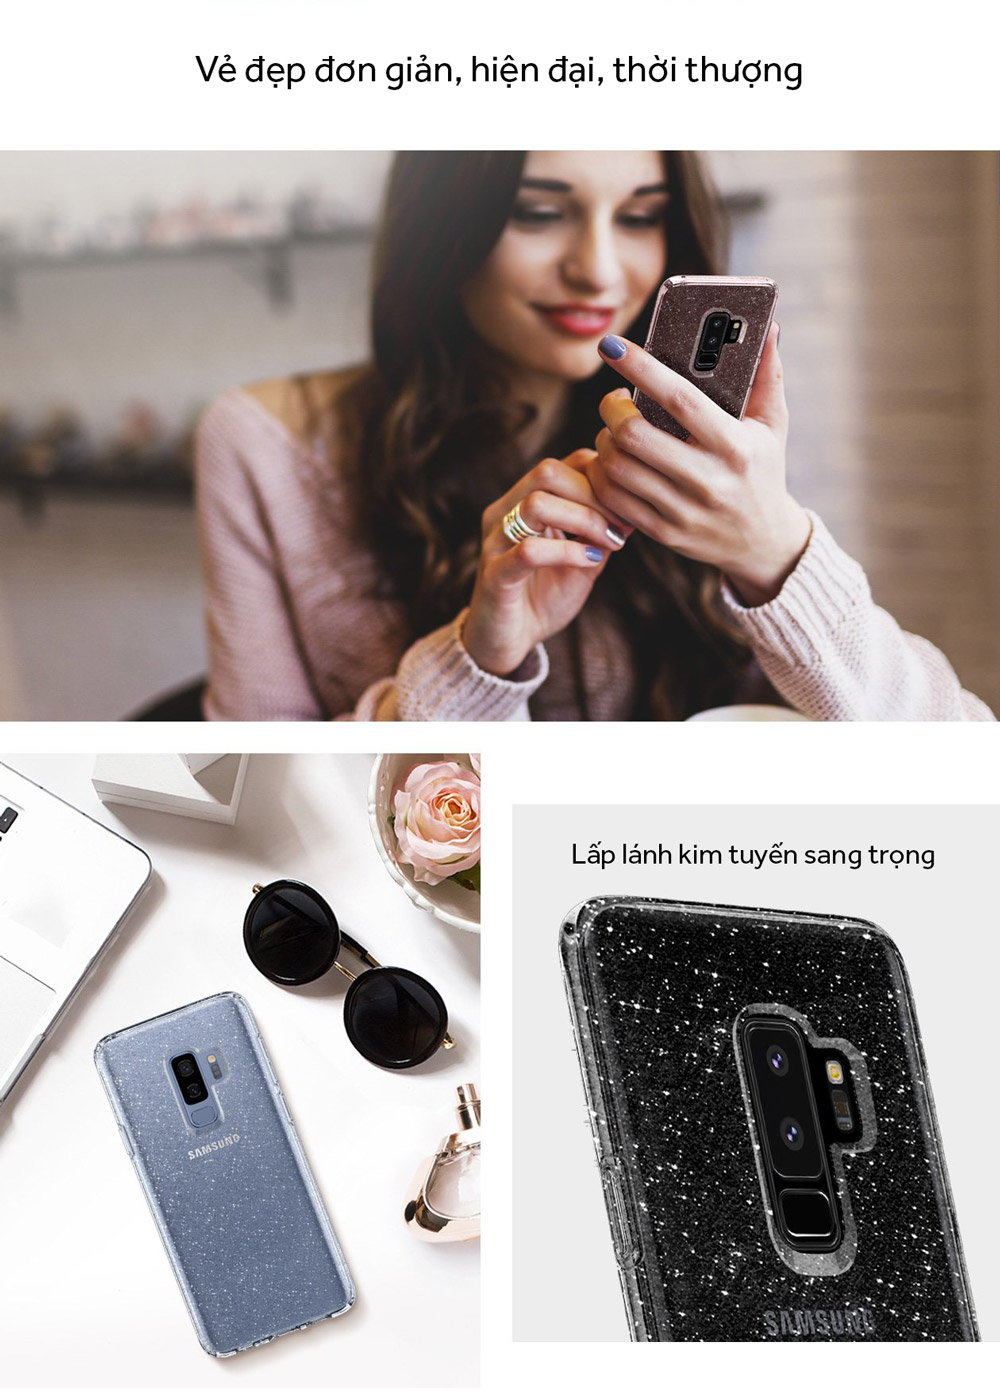 Samsung S9 Plus Case Spigen Liquid Crystal Glitter